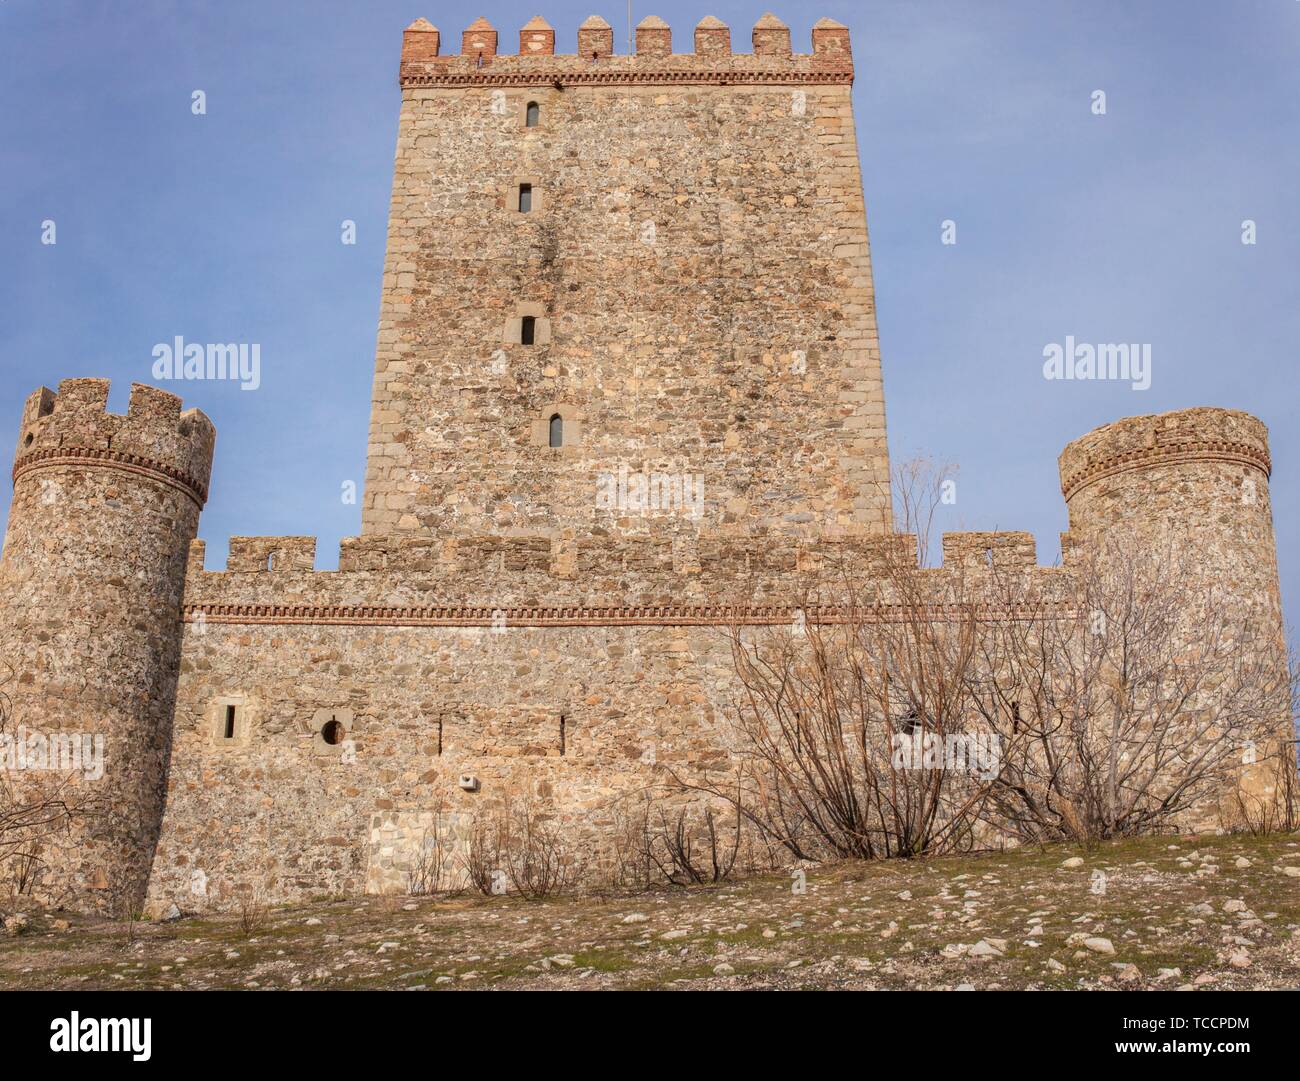 Castillo de Nogales, Badajoz, España. Fortaleza defensiva del siglo 15. El lado oeste. Foto de stock